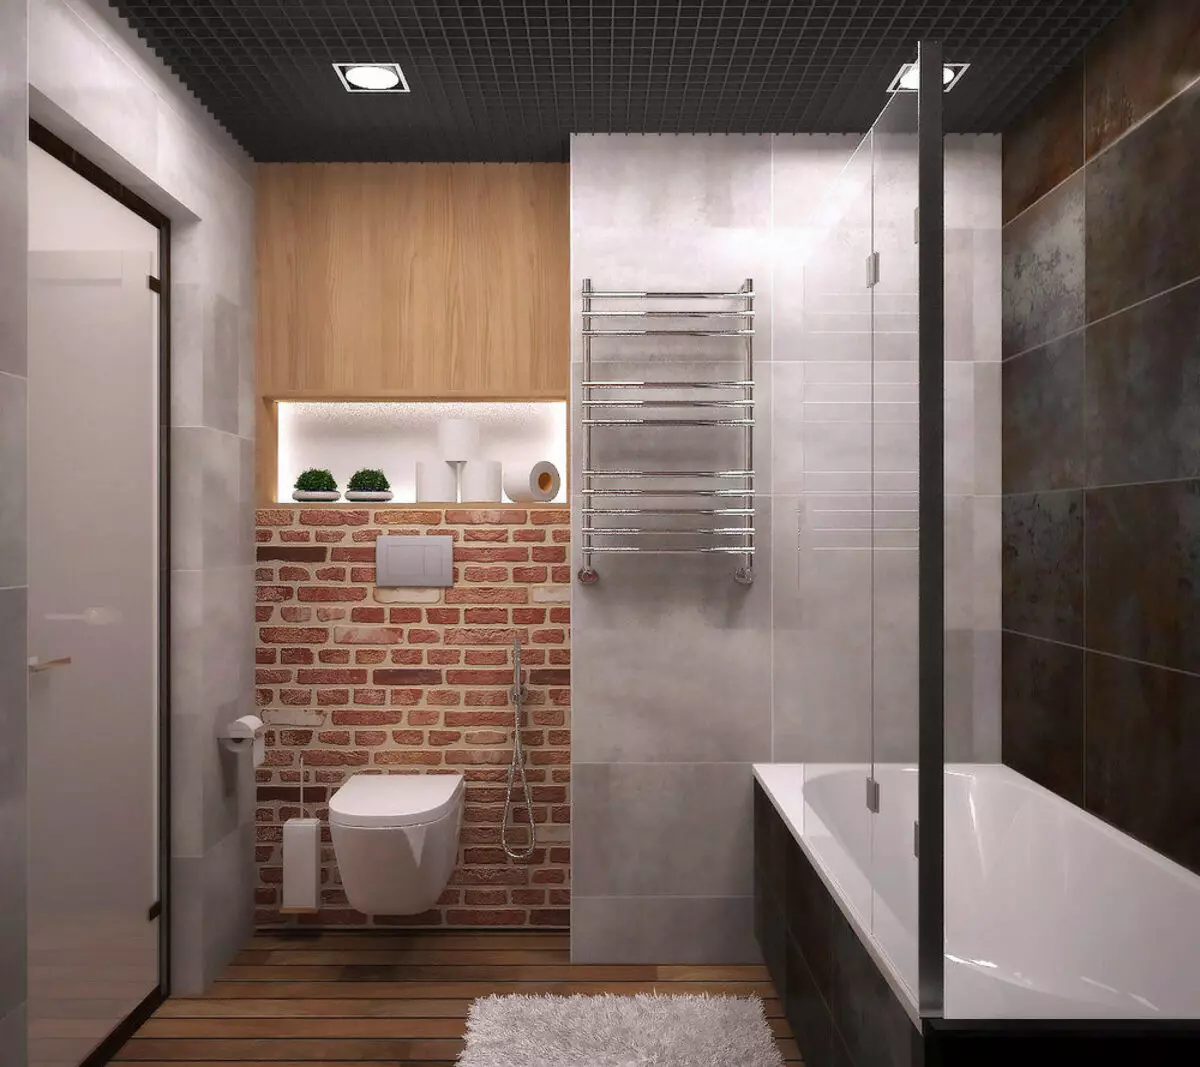 עיצוב חדר אמבטיה 5 KV. M (111 תמונות): פרויקטים של חדרי אמבטיה יפים 5 מטרים רבועים בדירה, פנים מודרני עם מכונת כביסה 10205_44